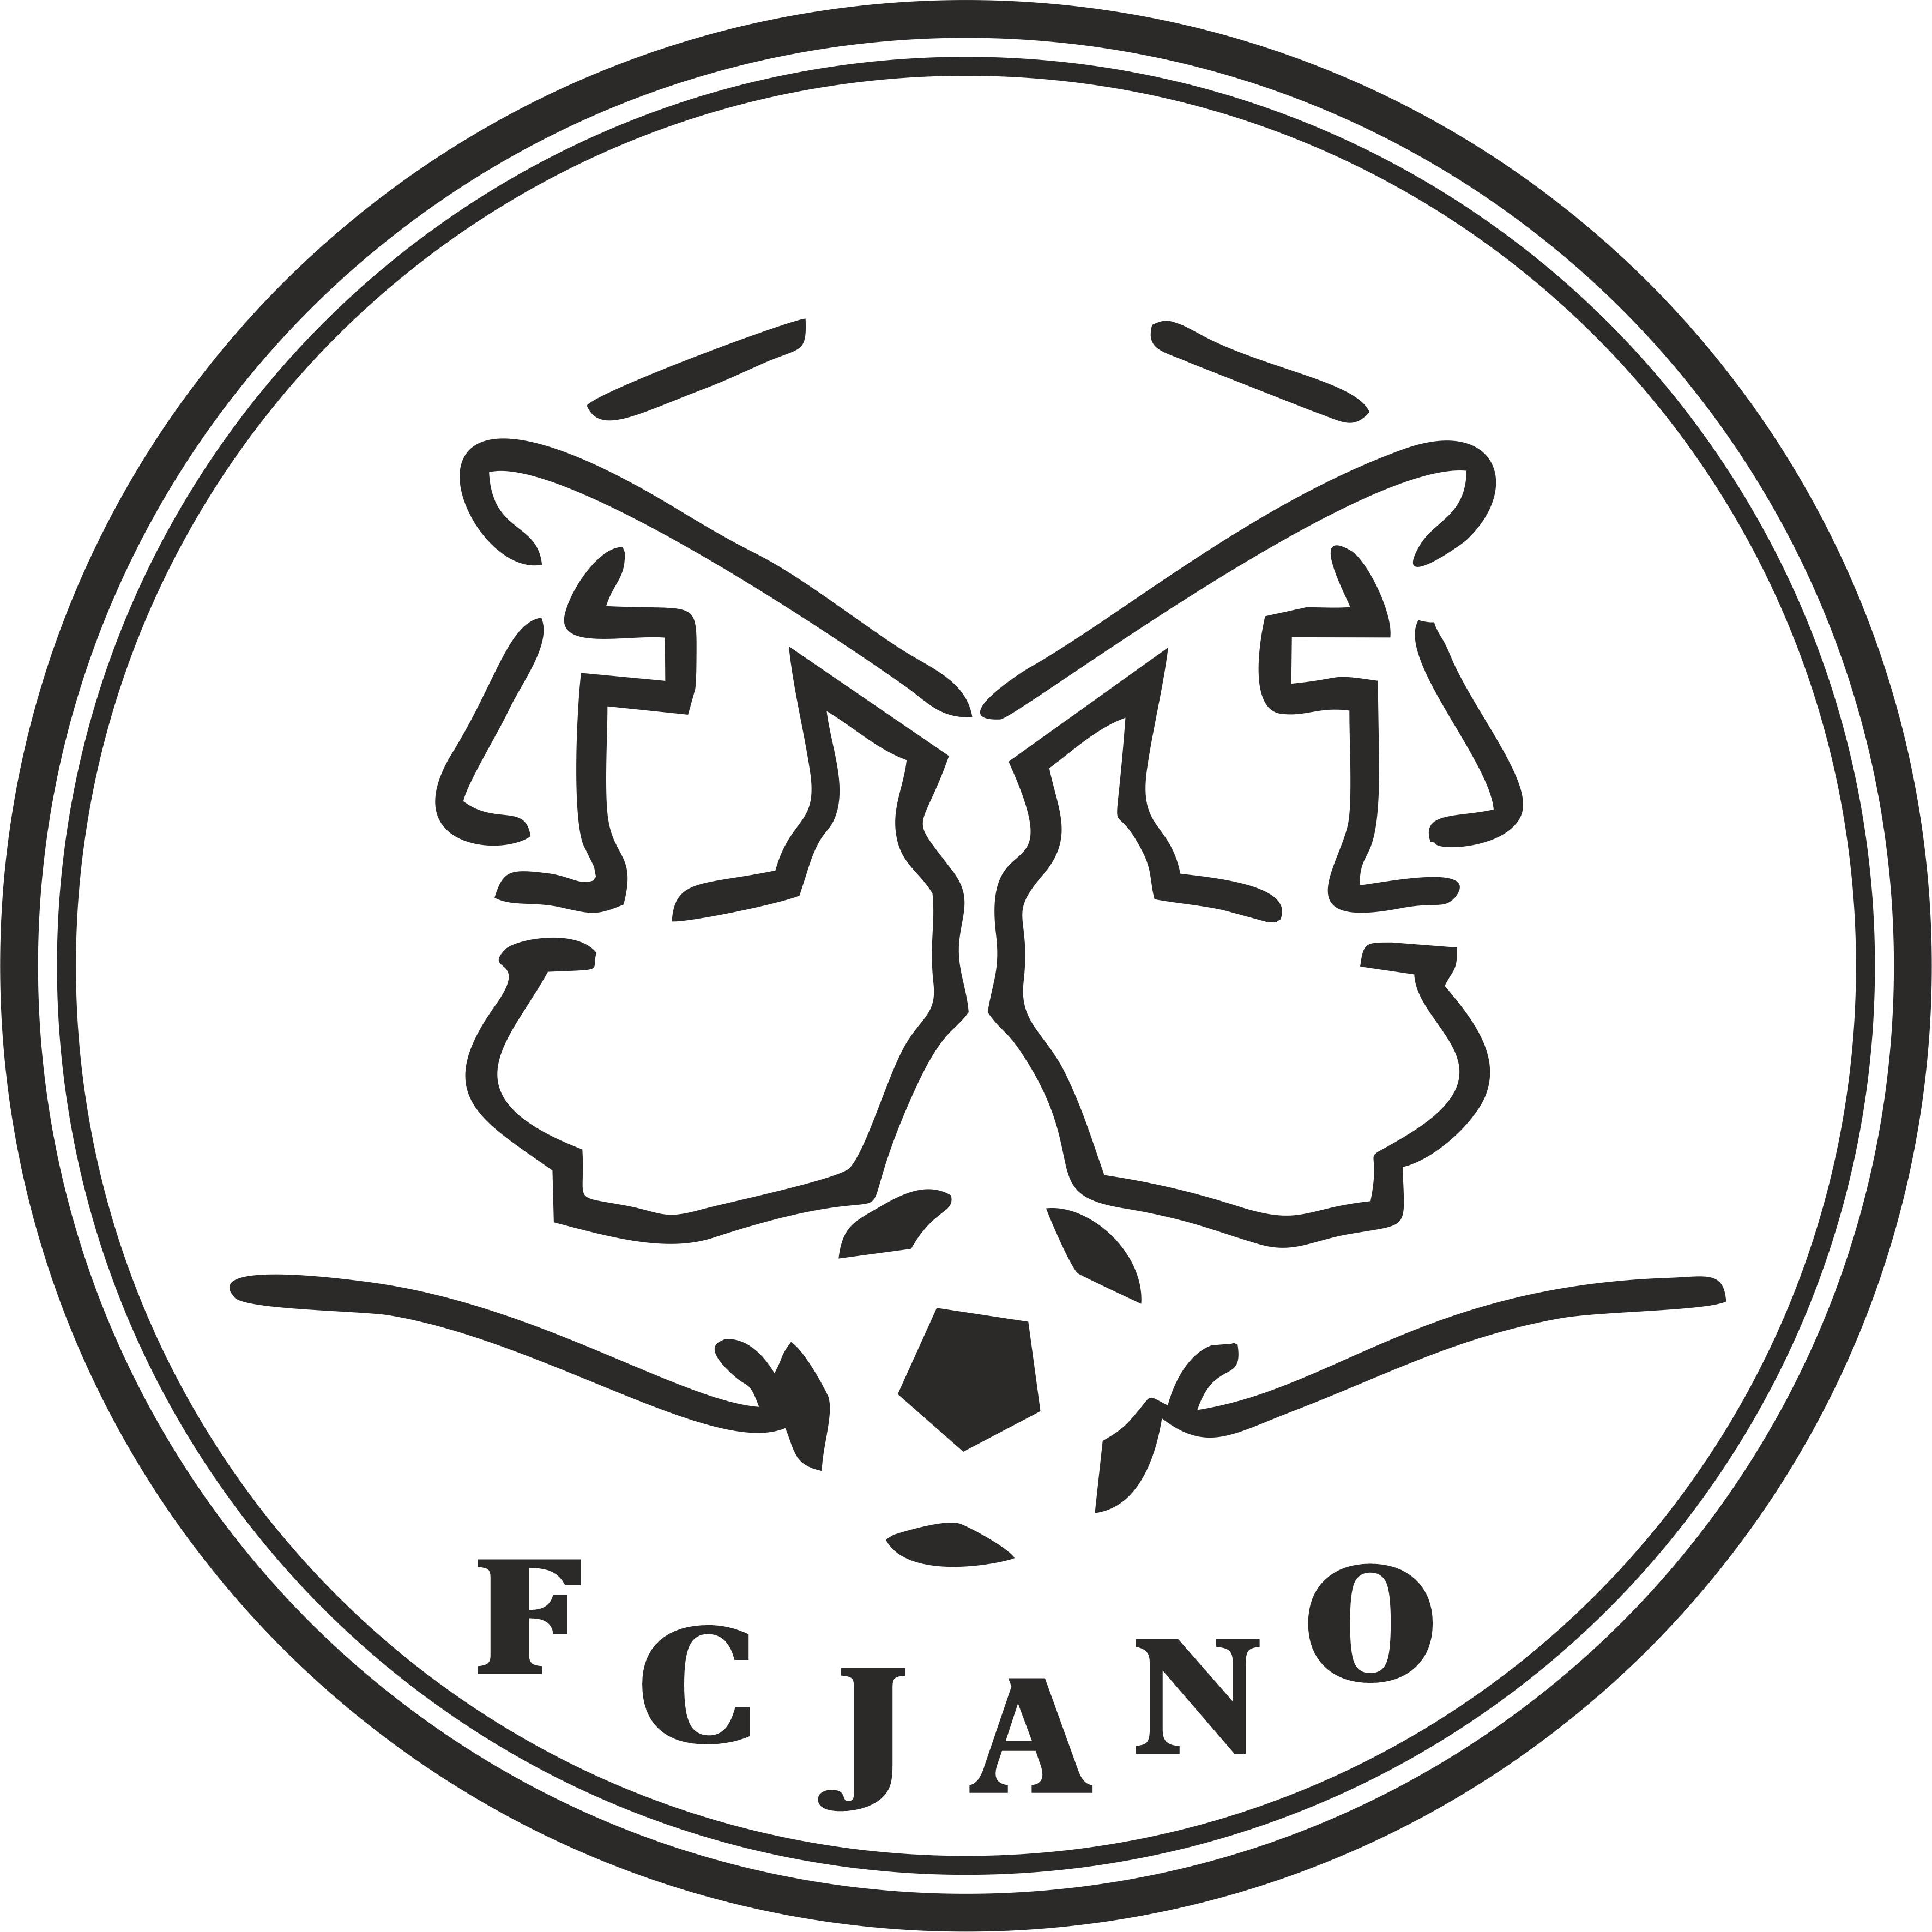 FC JANO